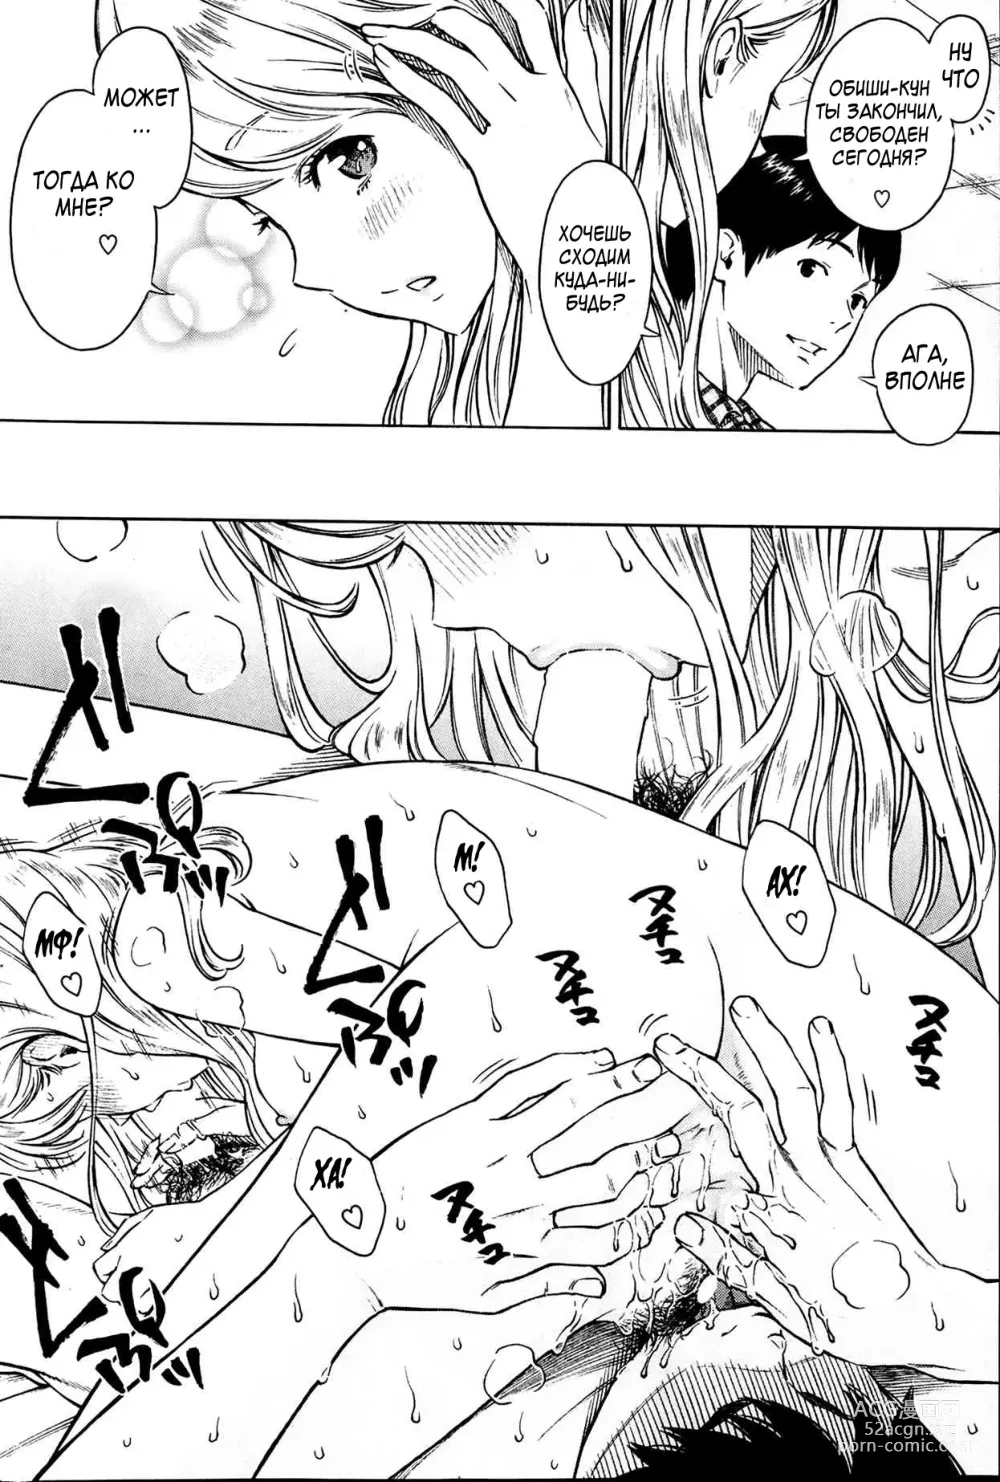 Page 4 of manga Хитоми